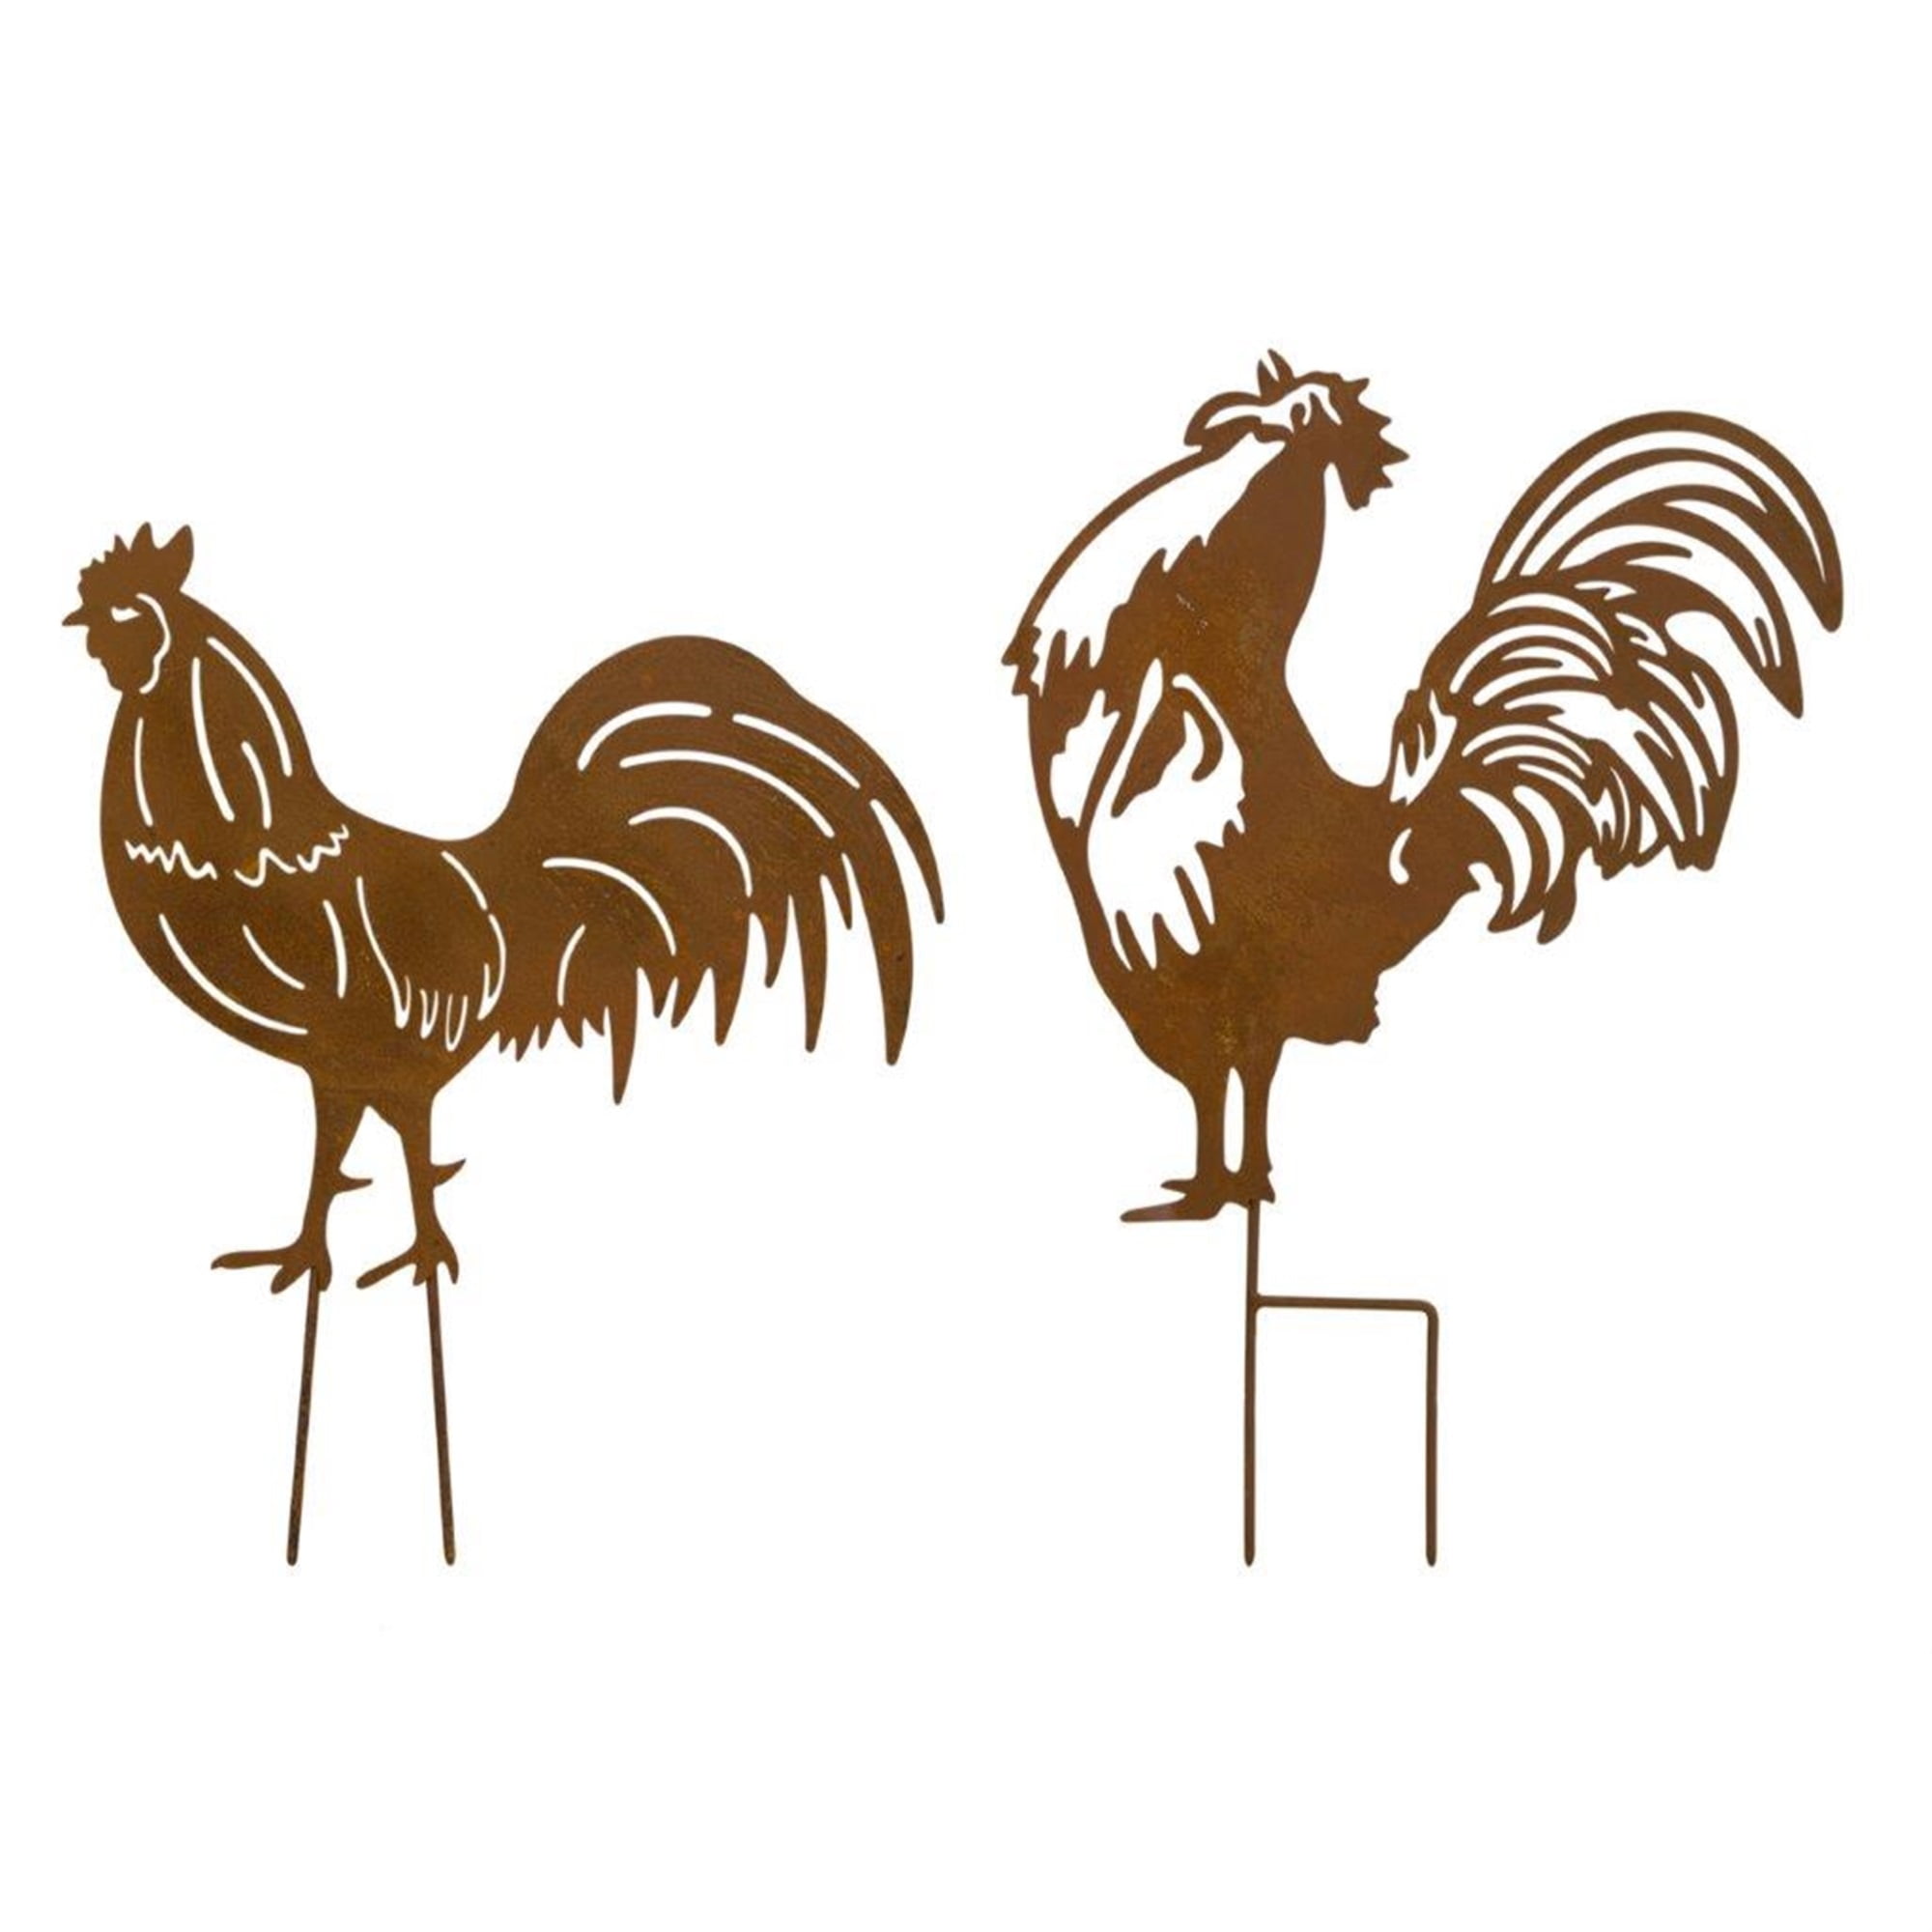 Chicken Lawn Stake (Set of 2) 14"L x 16"H, 12.75"L x 17.75"H Iron